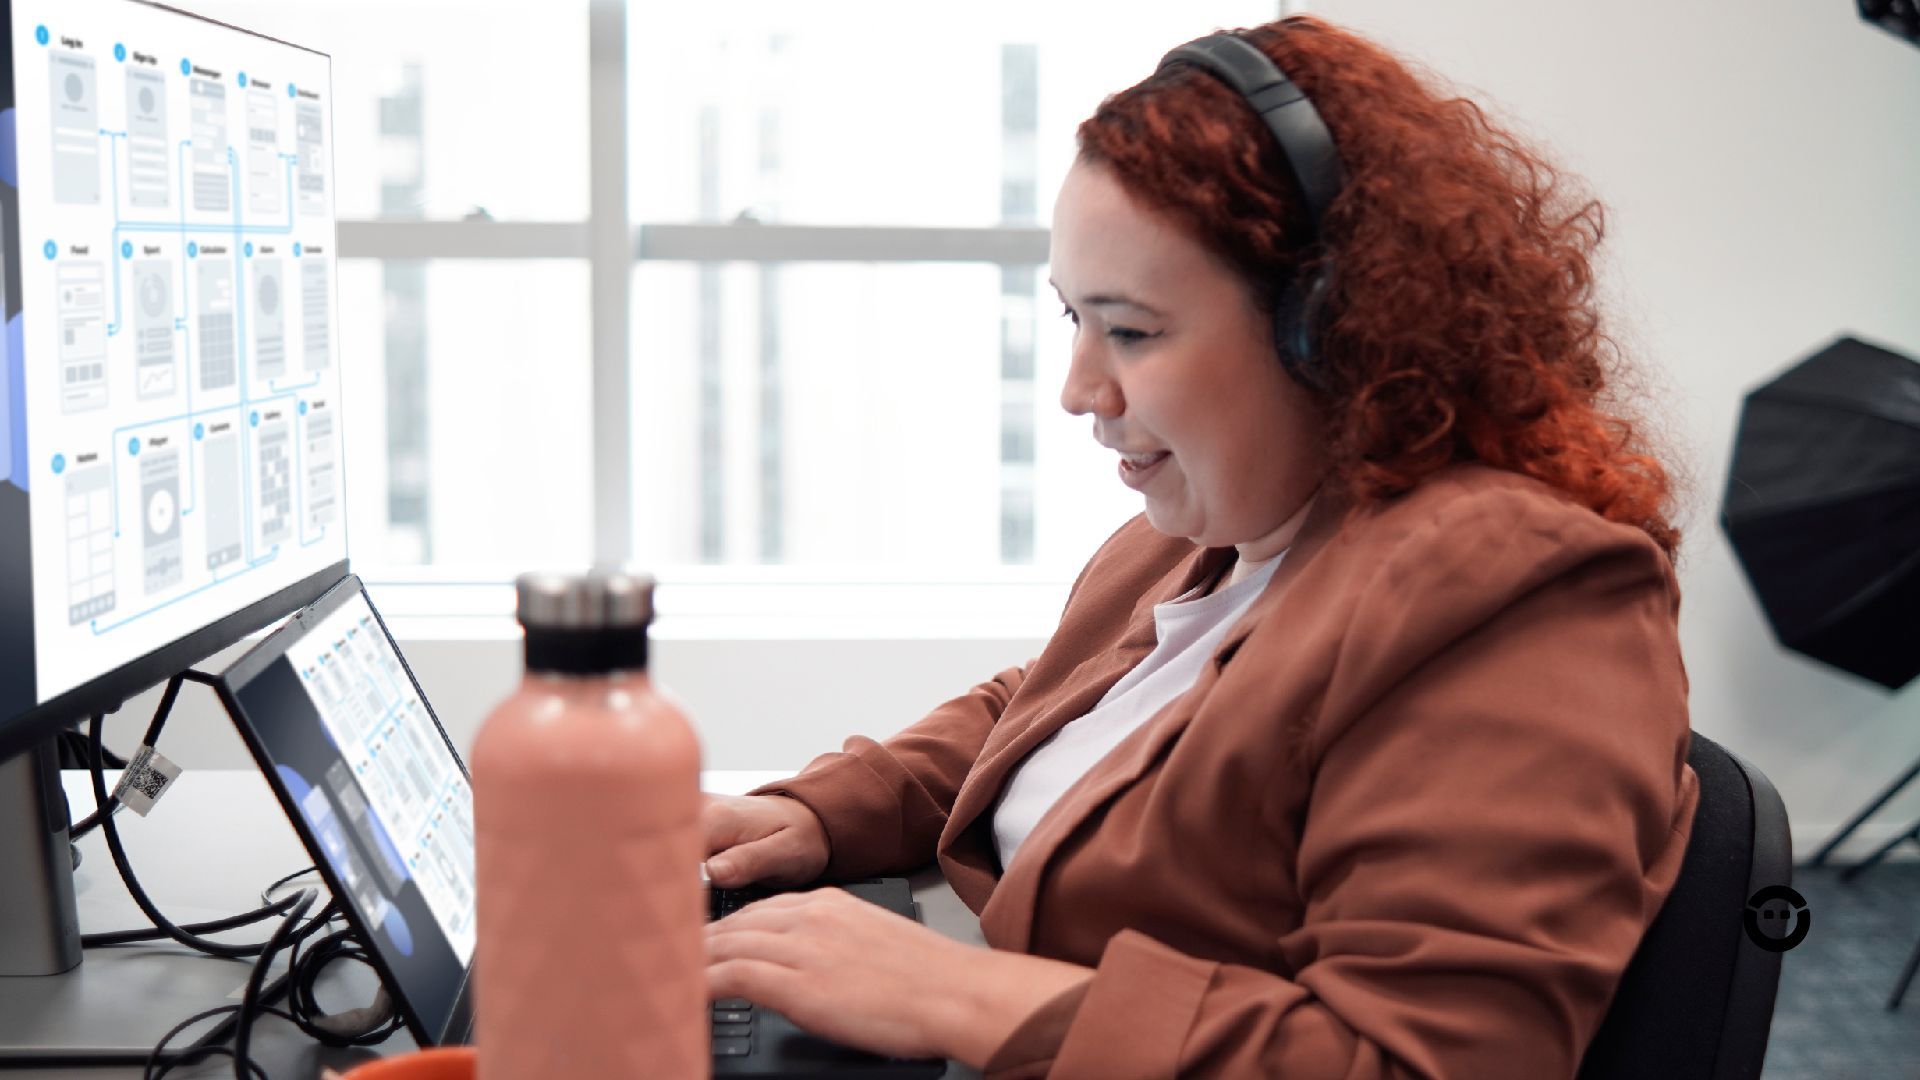 Uma mulher usando fones de ouvido enquanto usa um trabalha na experiência do usuário de um site.